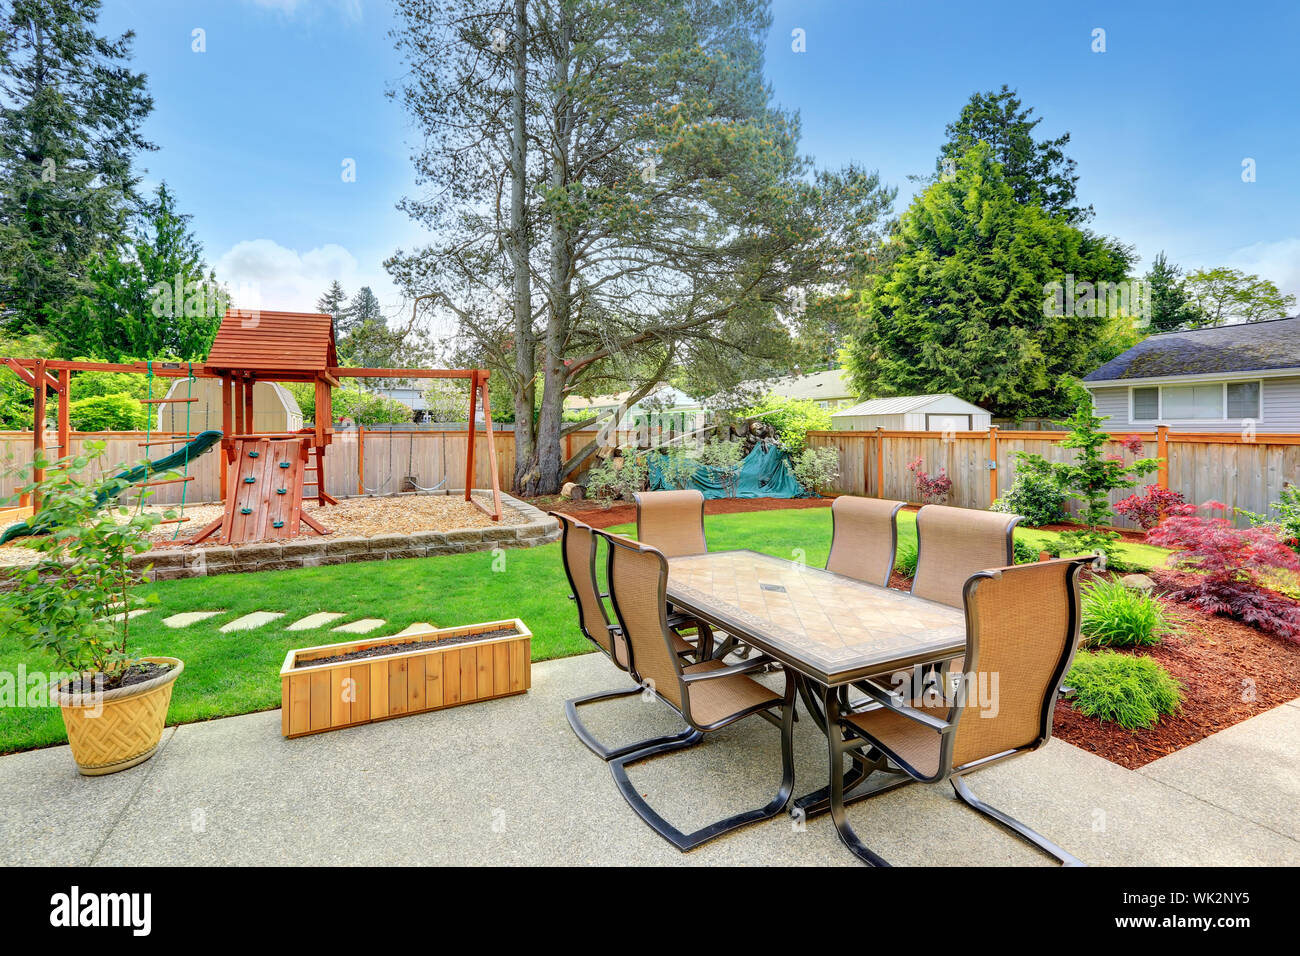 Jardín con zona de patio y área de juegos para niños Fotografía de stock -  Alamy